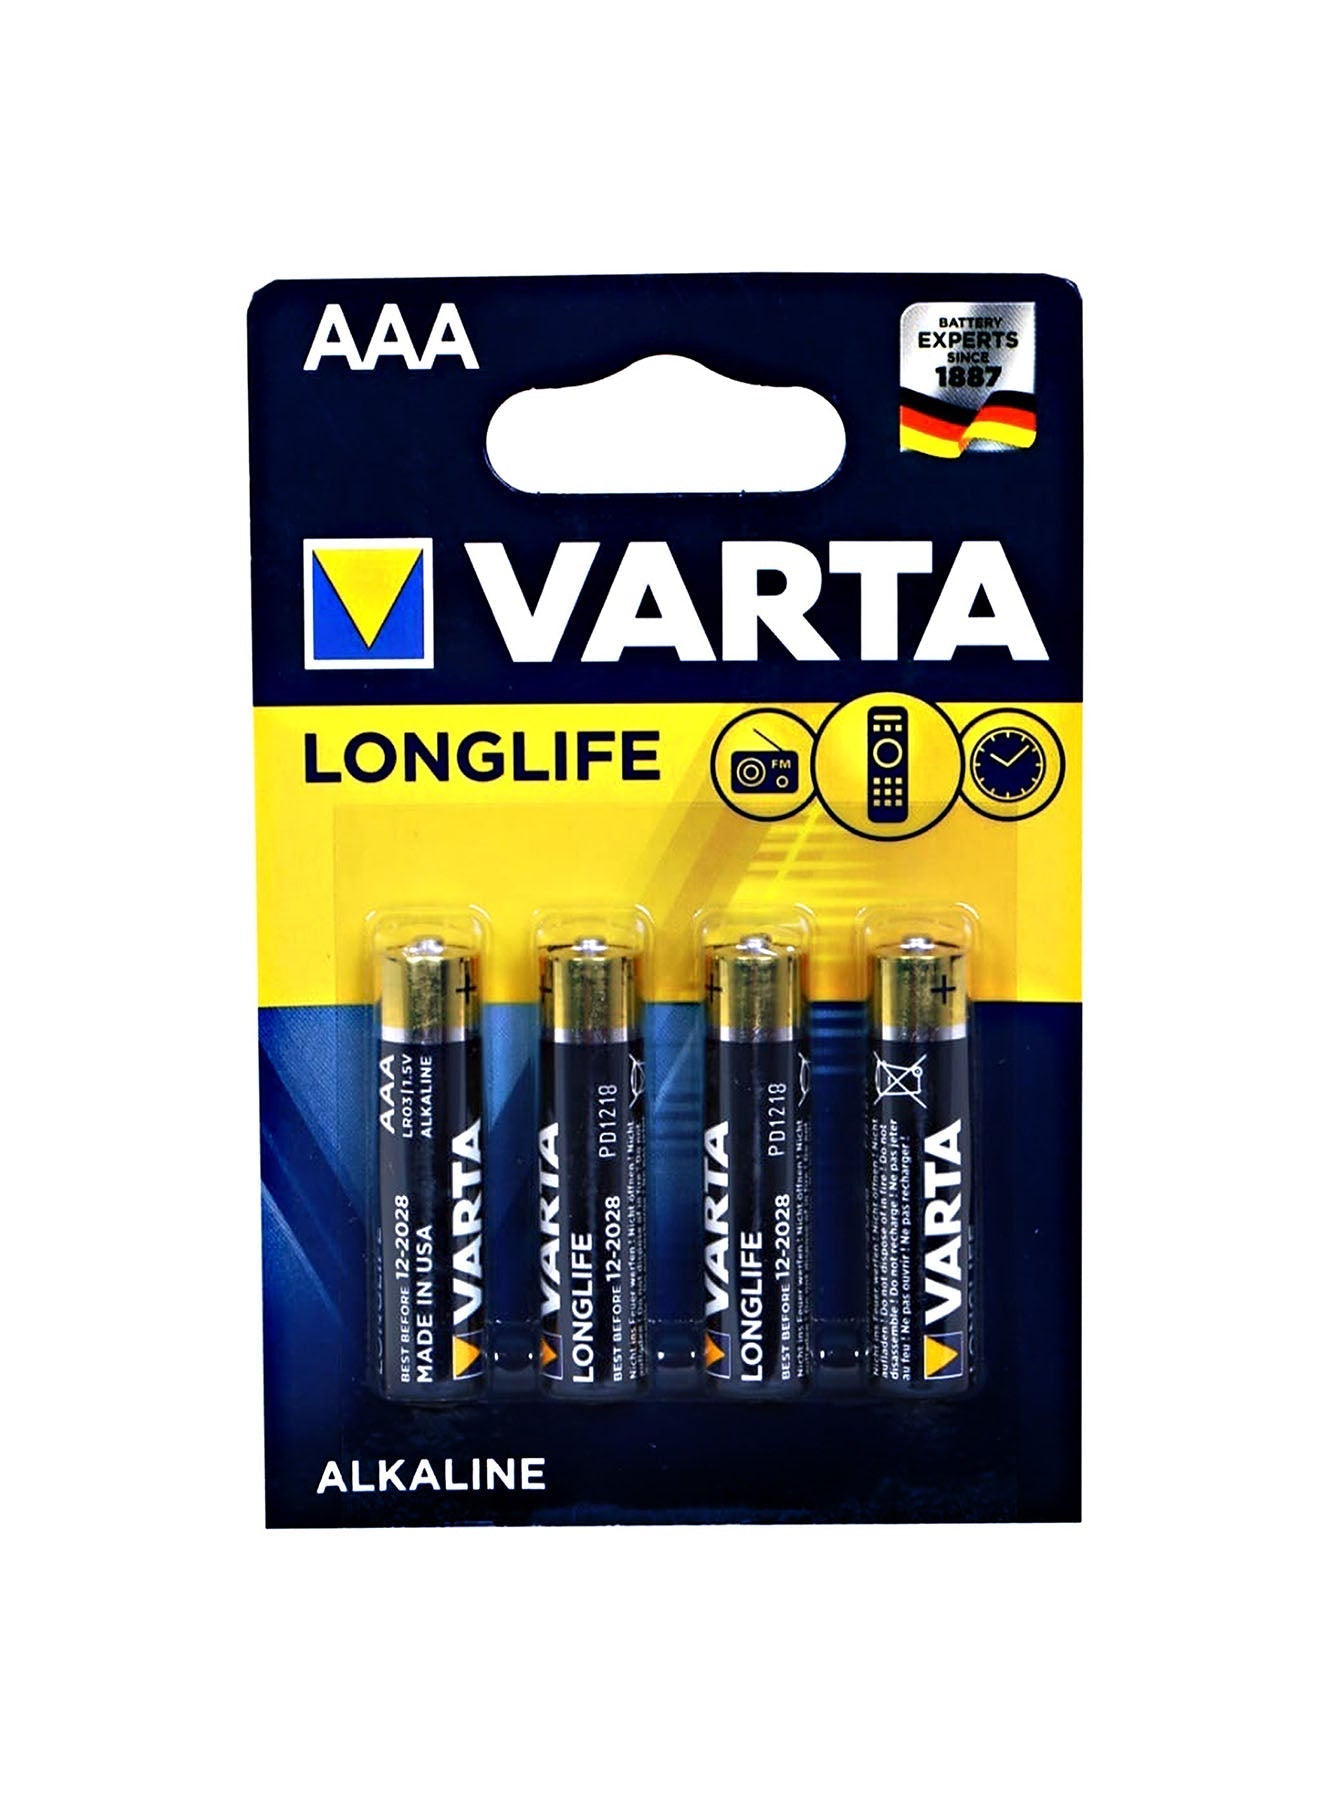 Varta Long Life AAA 4 Unit Alkaline Battery 15 V Value Pack of 2 